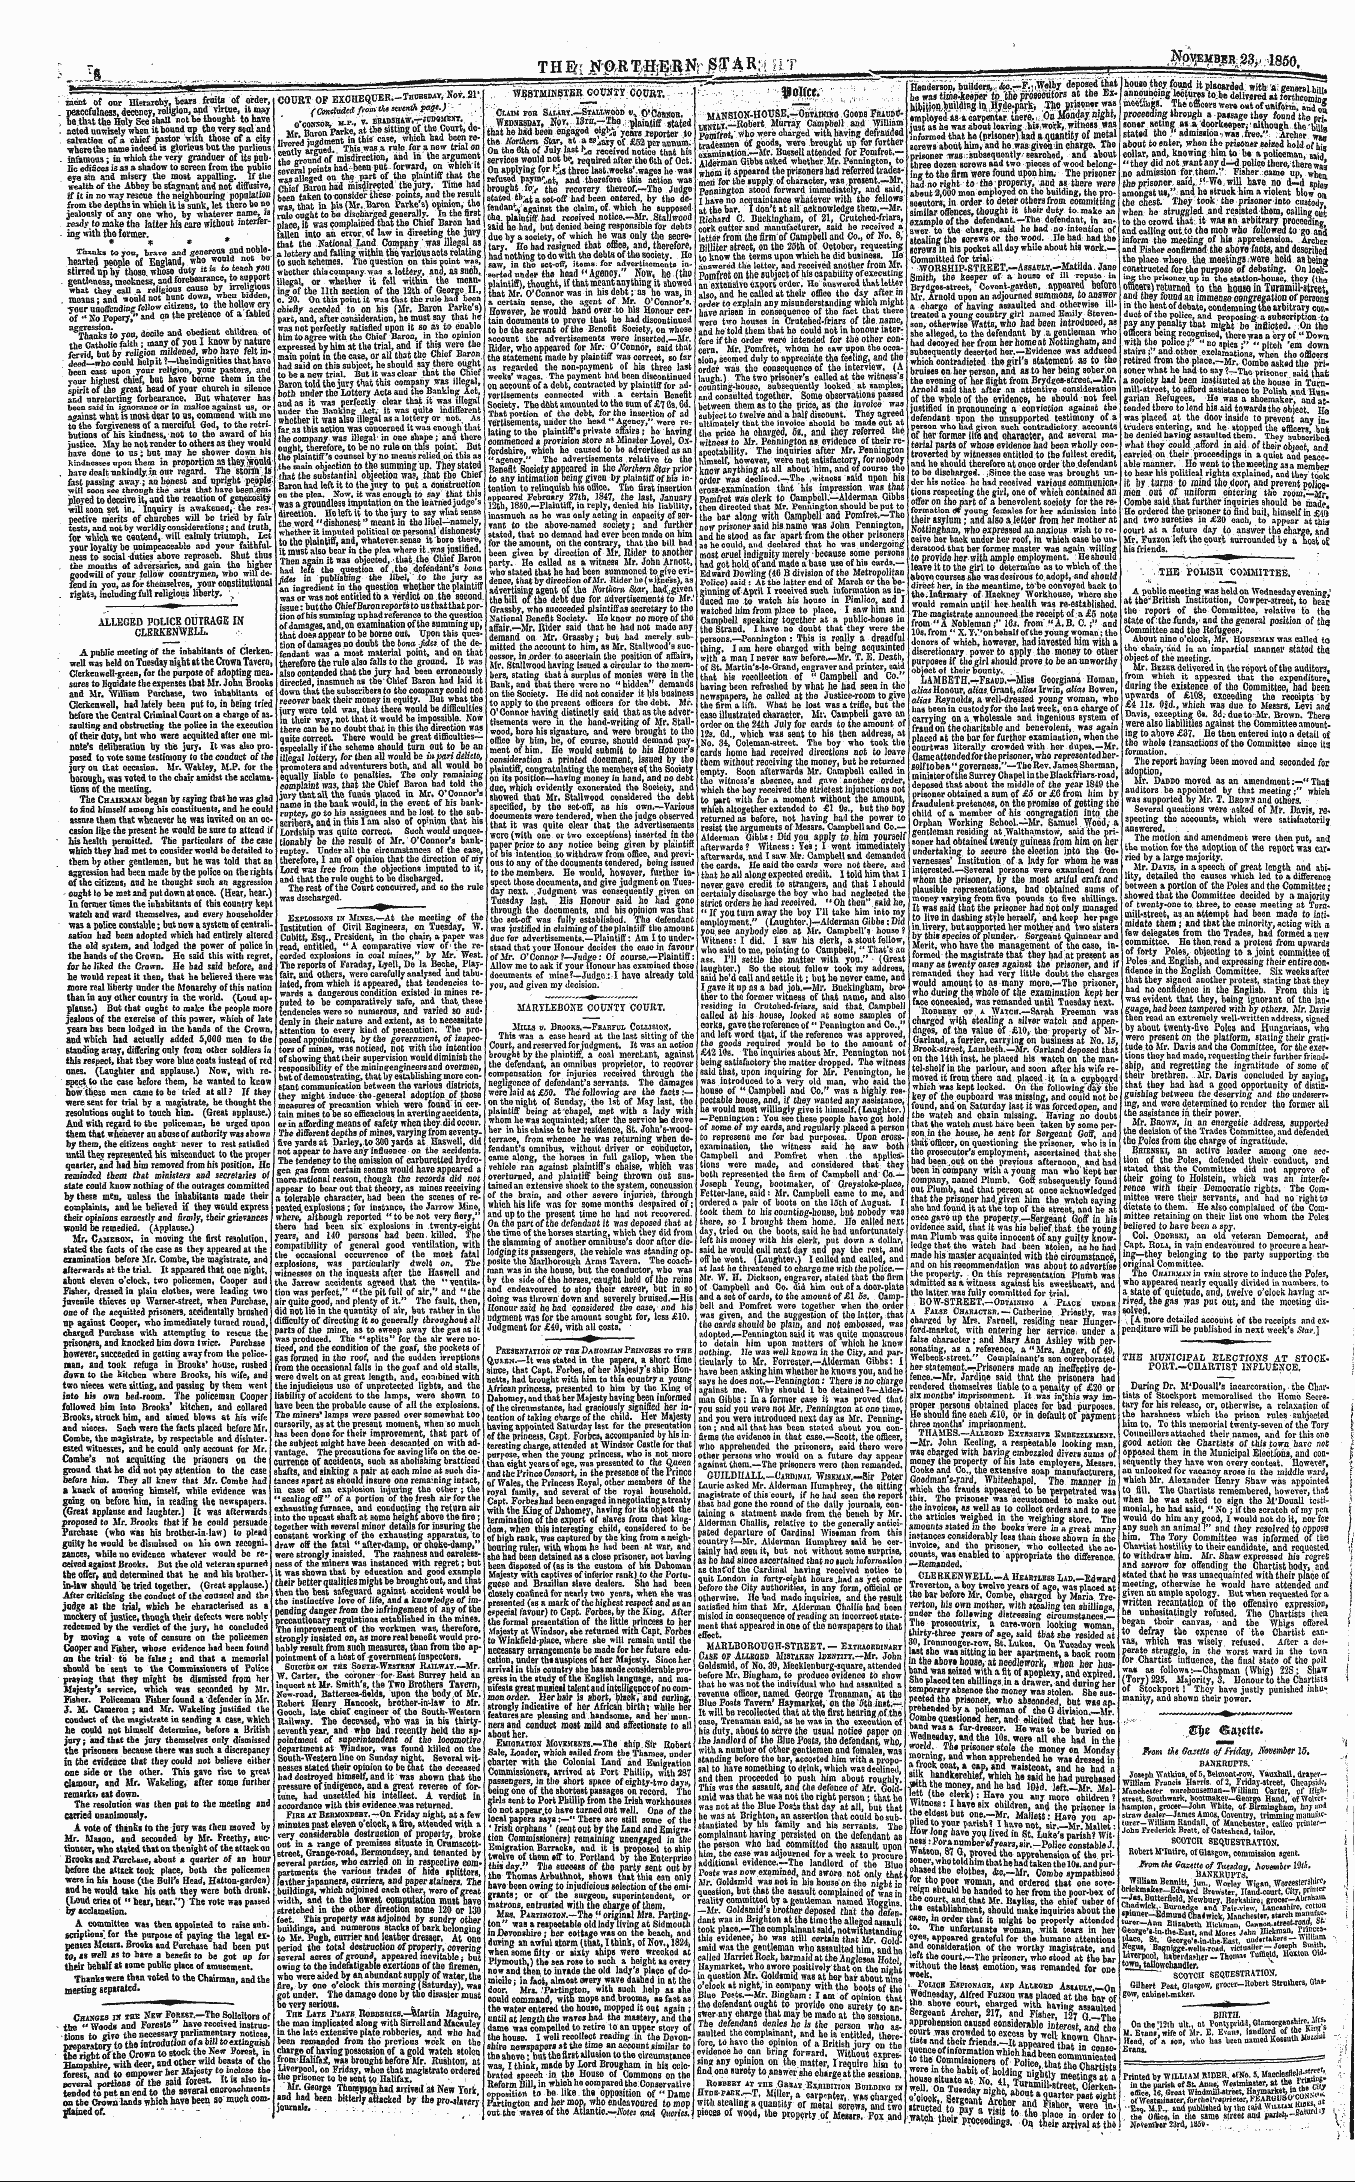 Northern Star (1837-1852): jS F Y, 2nd edition - Ww